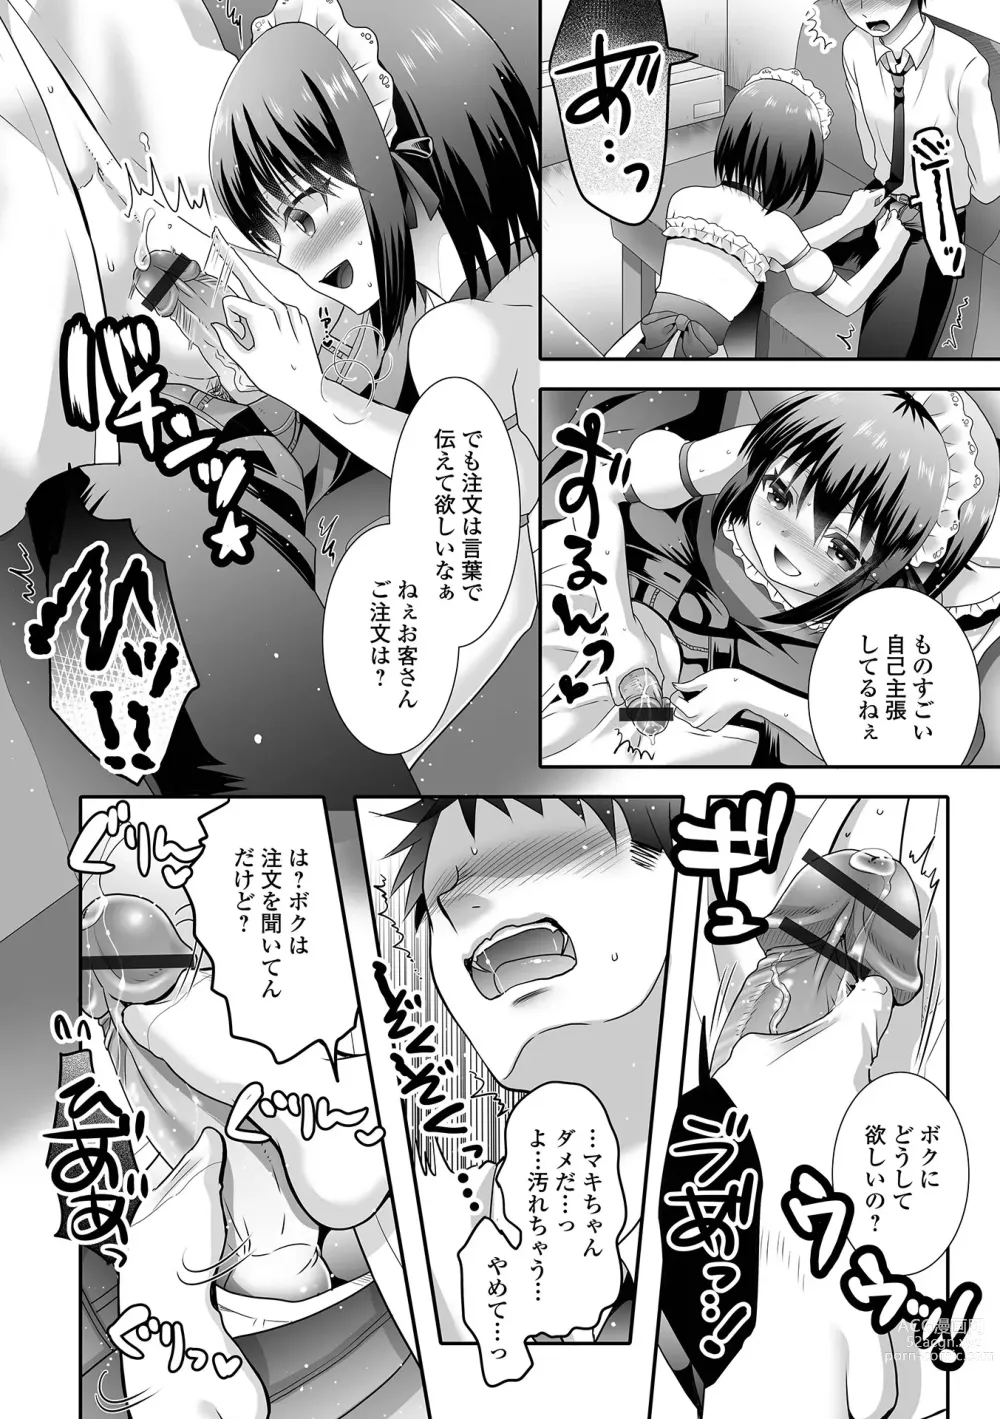 Page 26 of manga Gekkan Web Otoko no Ko-llection! S Vol. 89